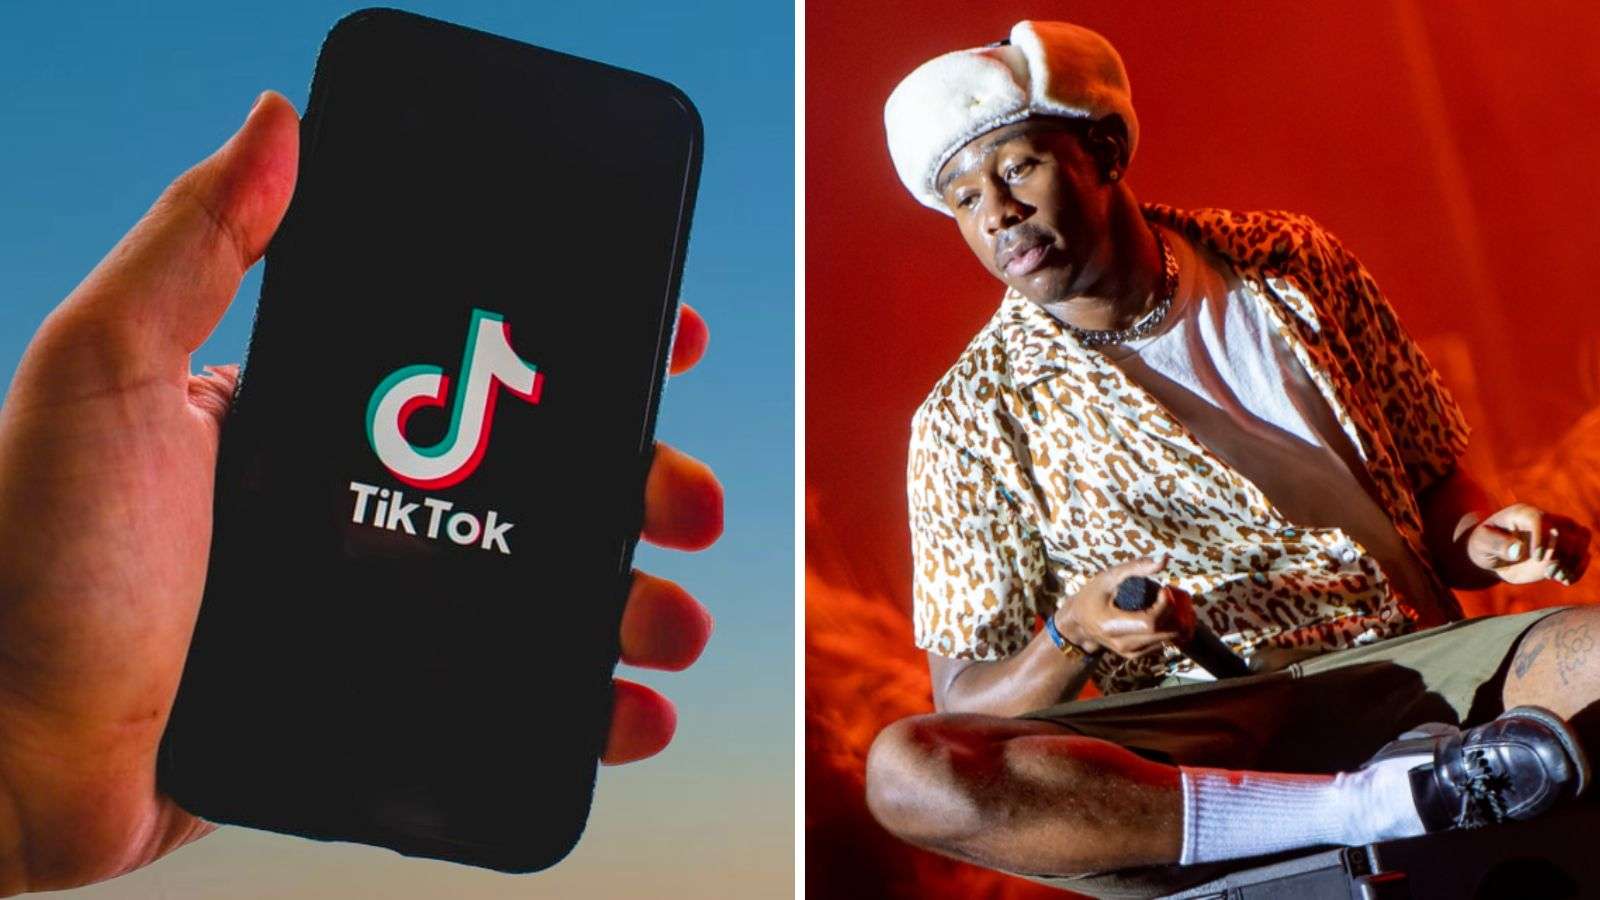 TikTok app on phone, Tyler, the Creator